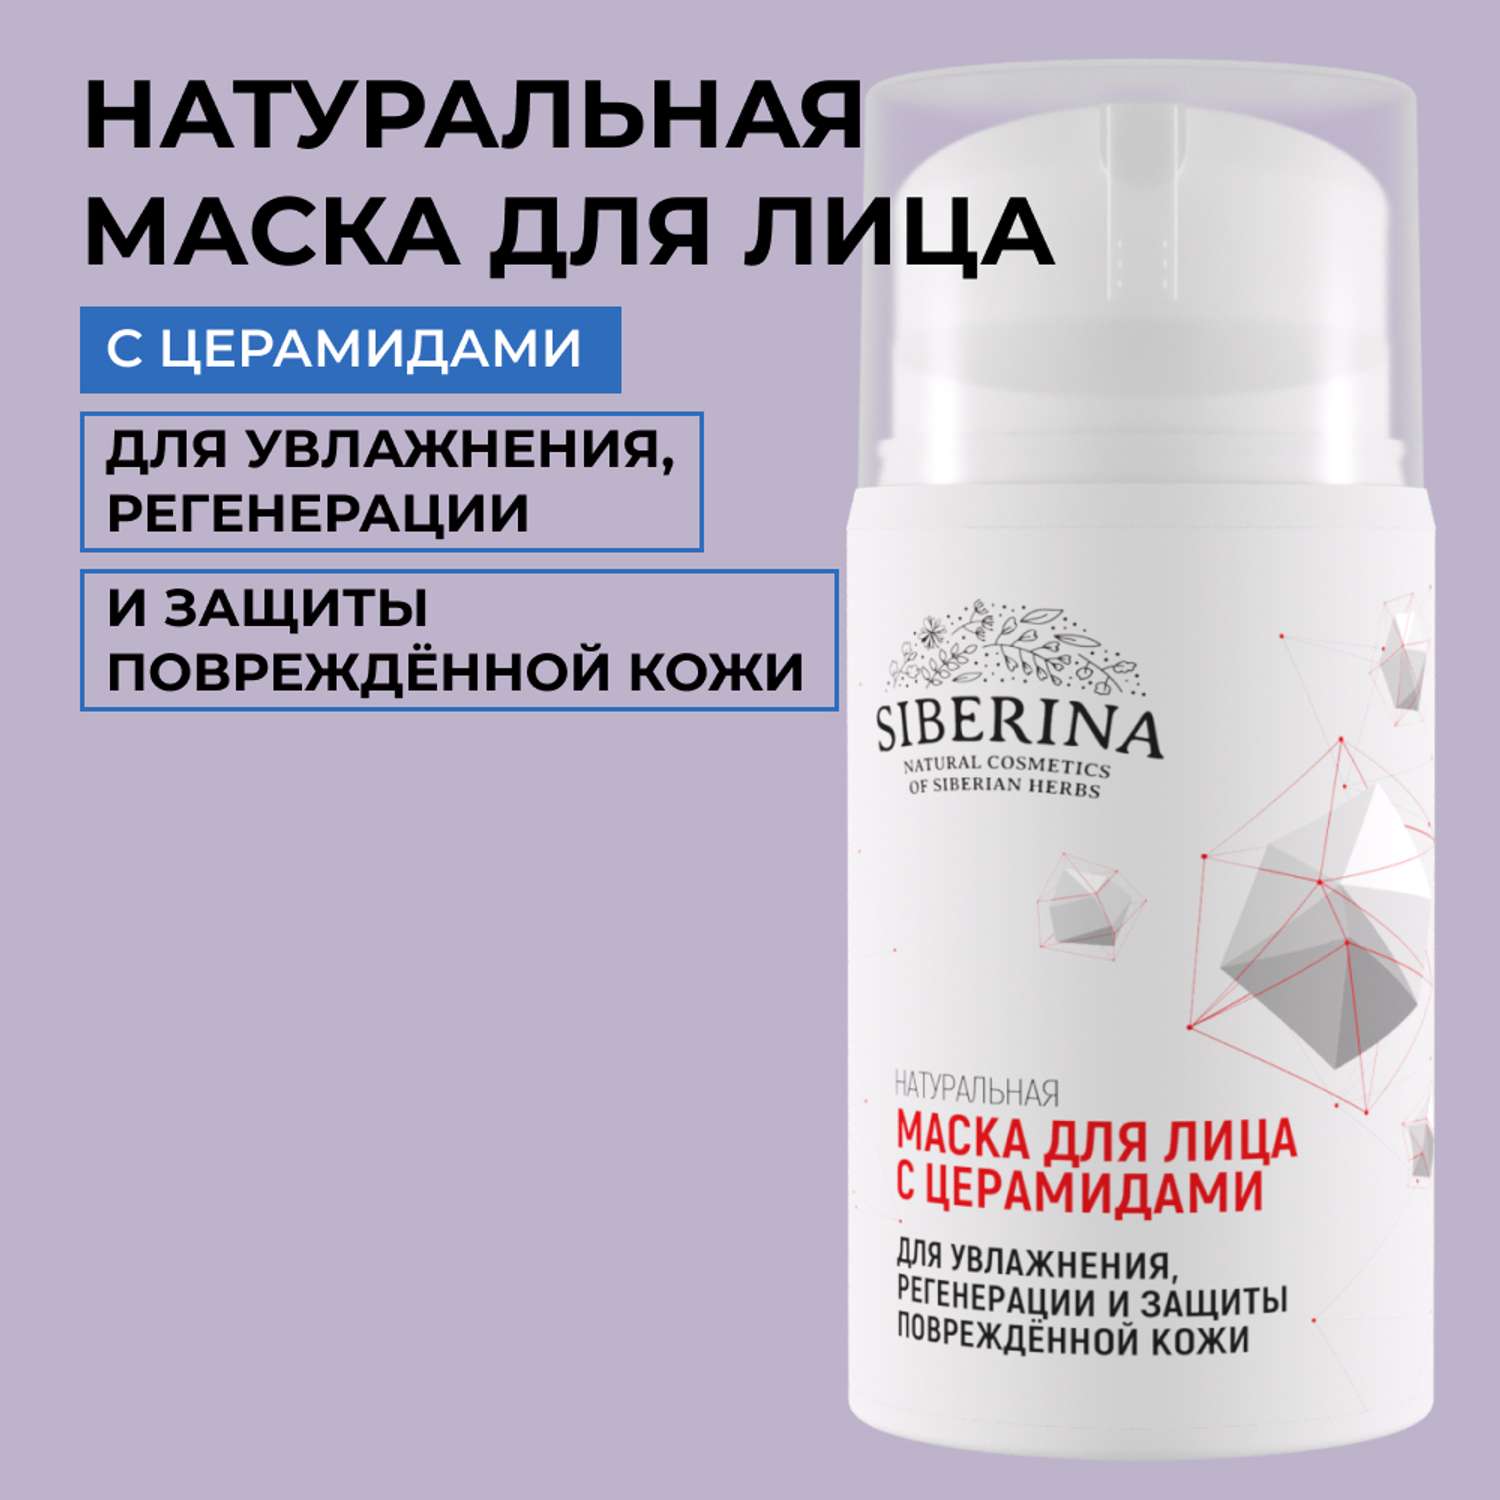 Маска для лица Siberina натуральная «Для увлажнения регенерации и защиты» с церамидами 50 мл - фото 1